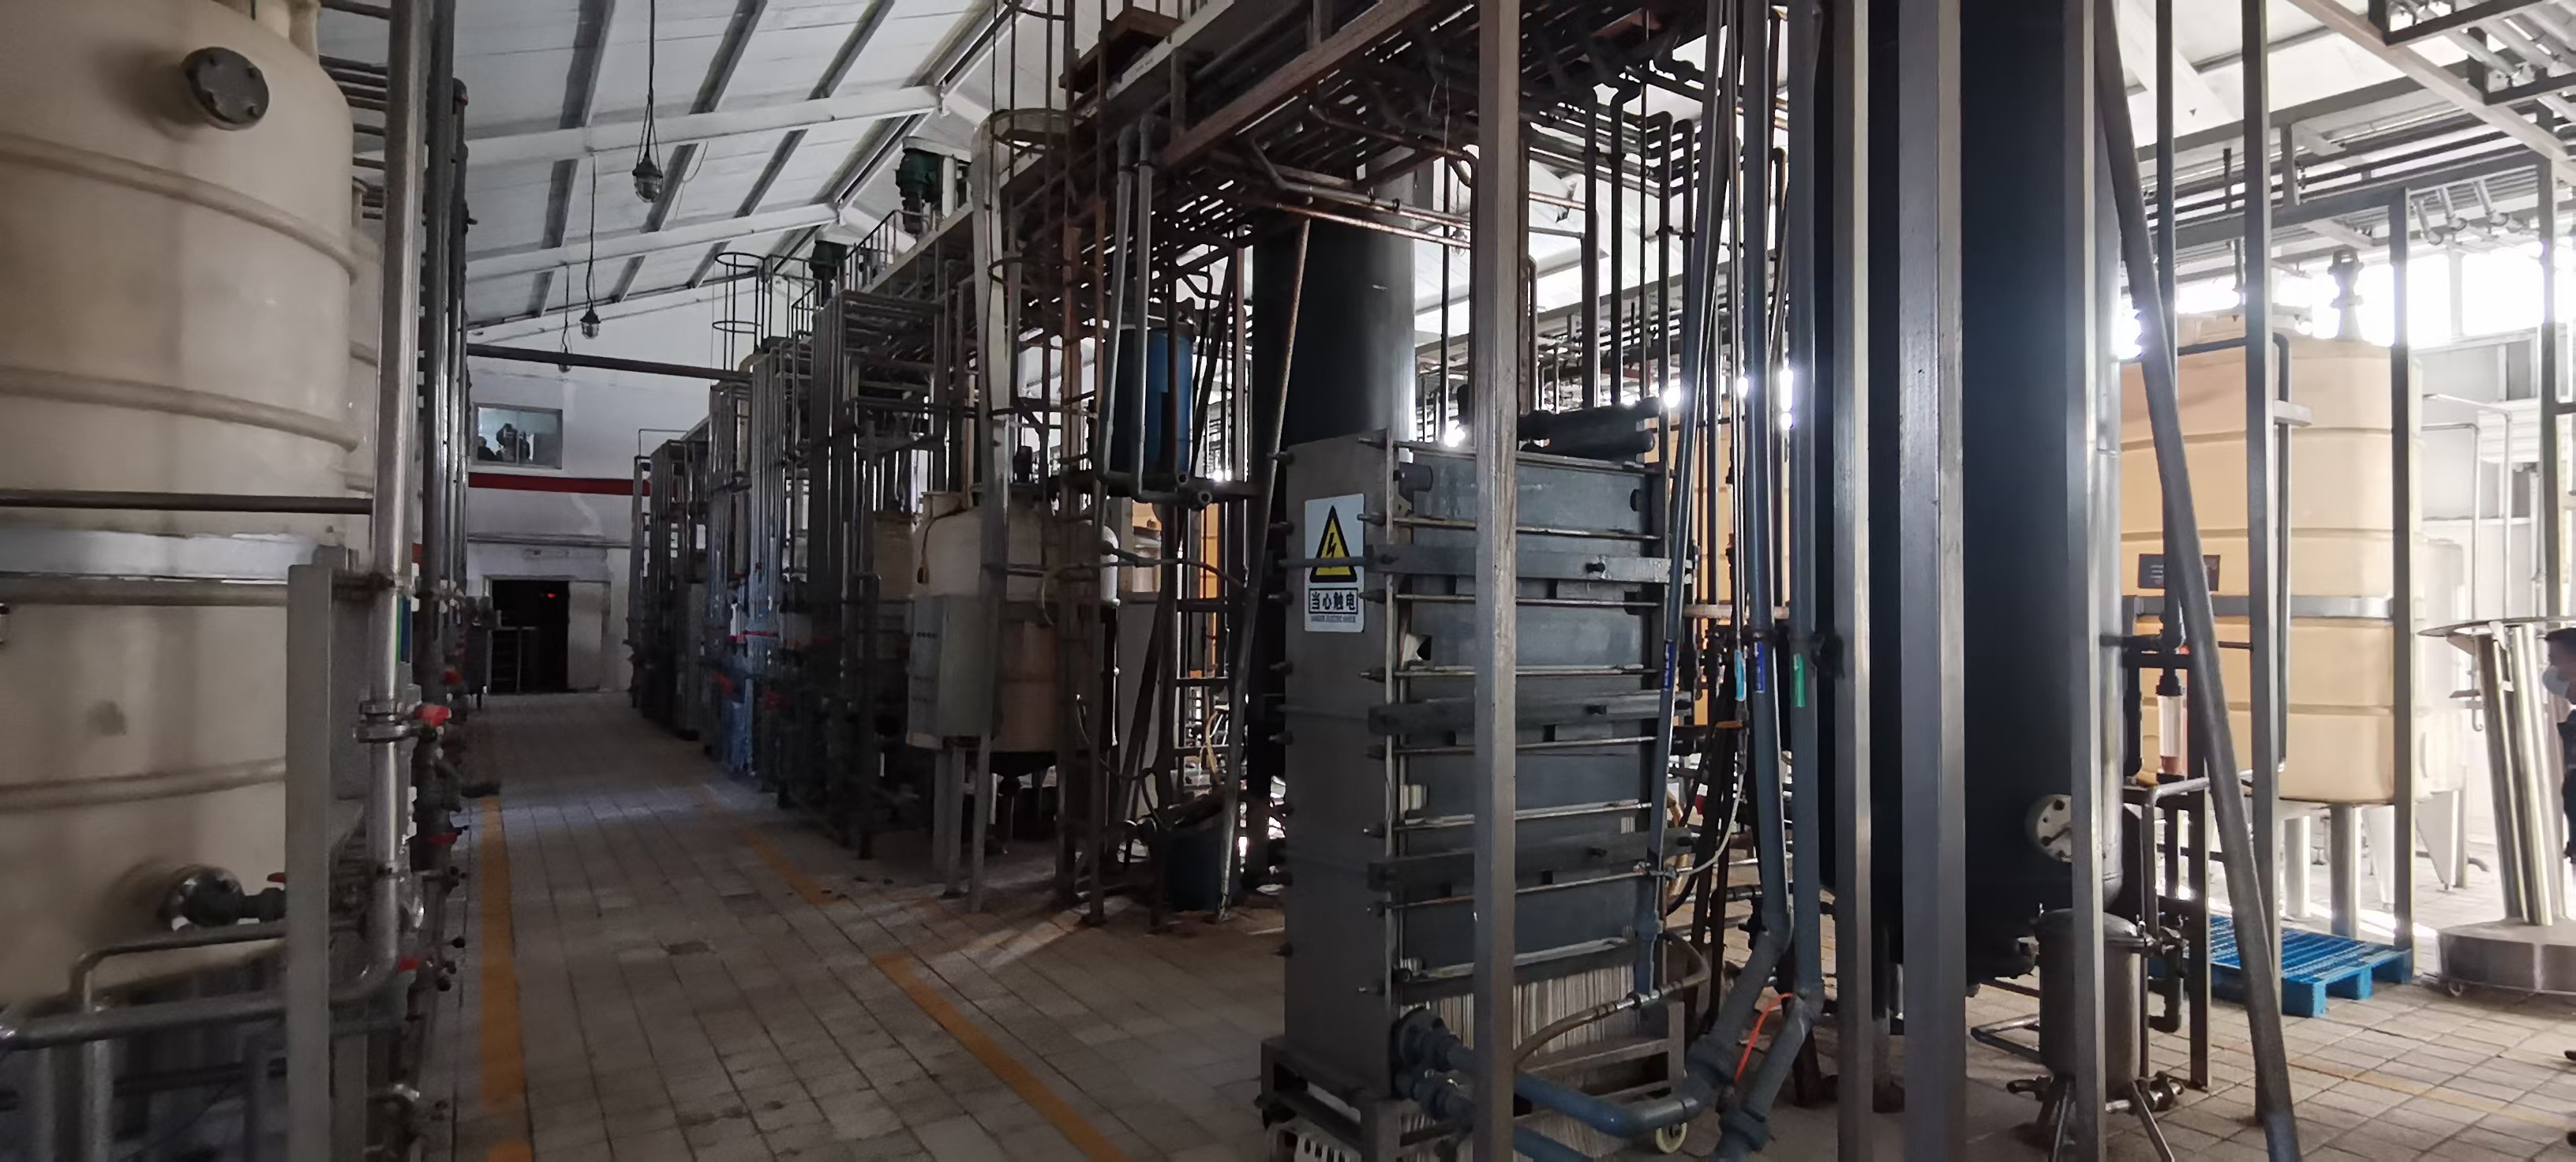 珠海市电镀厂设备回收/珠海市饮料生产线回收价格